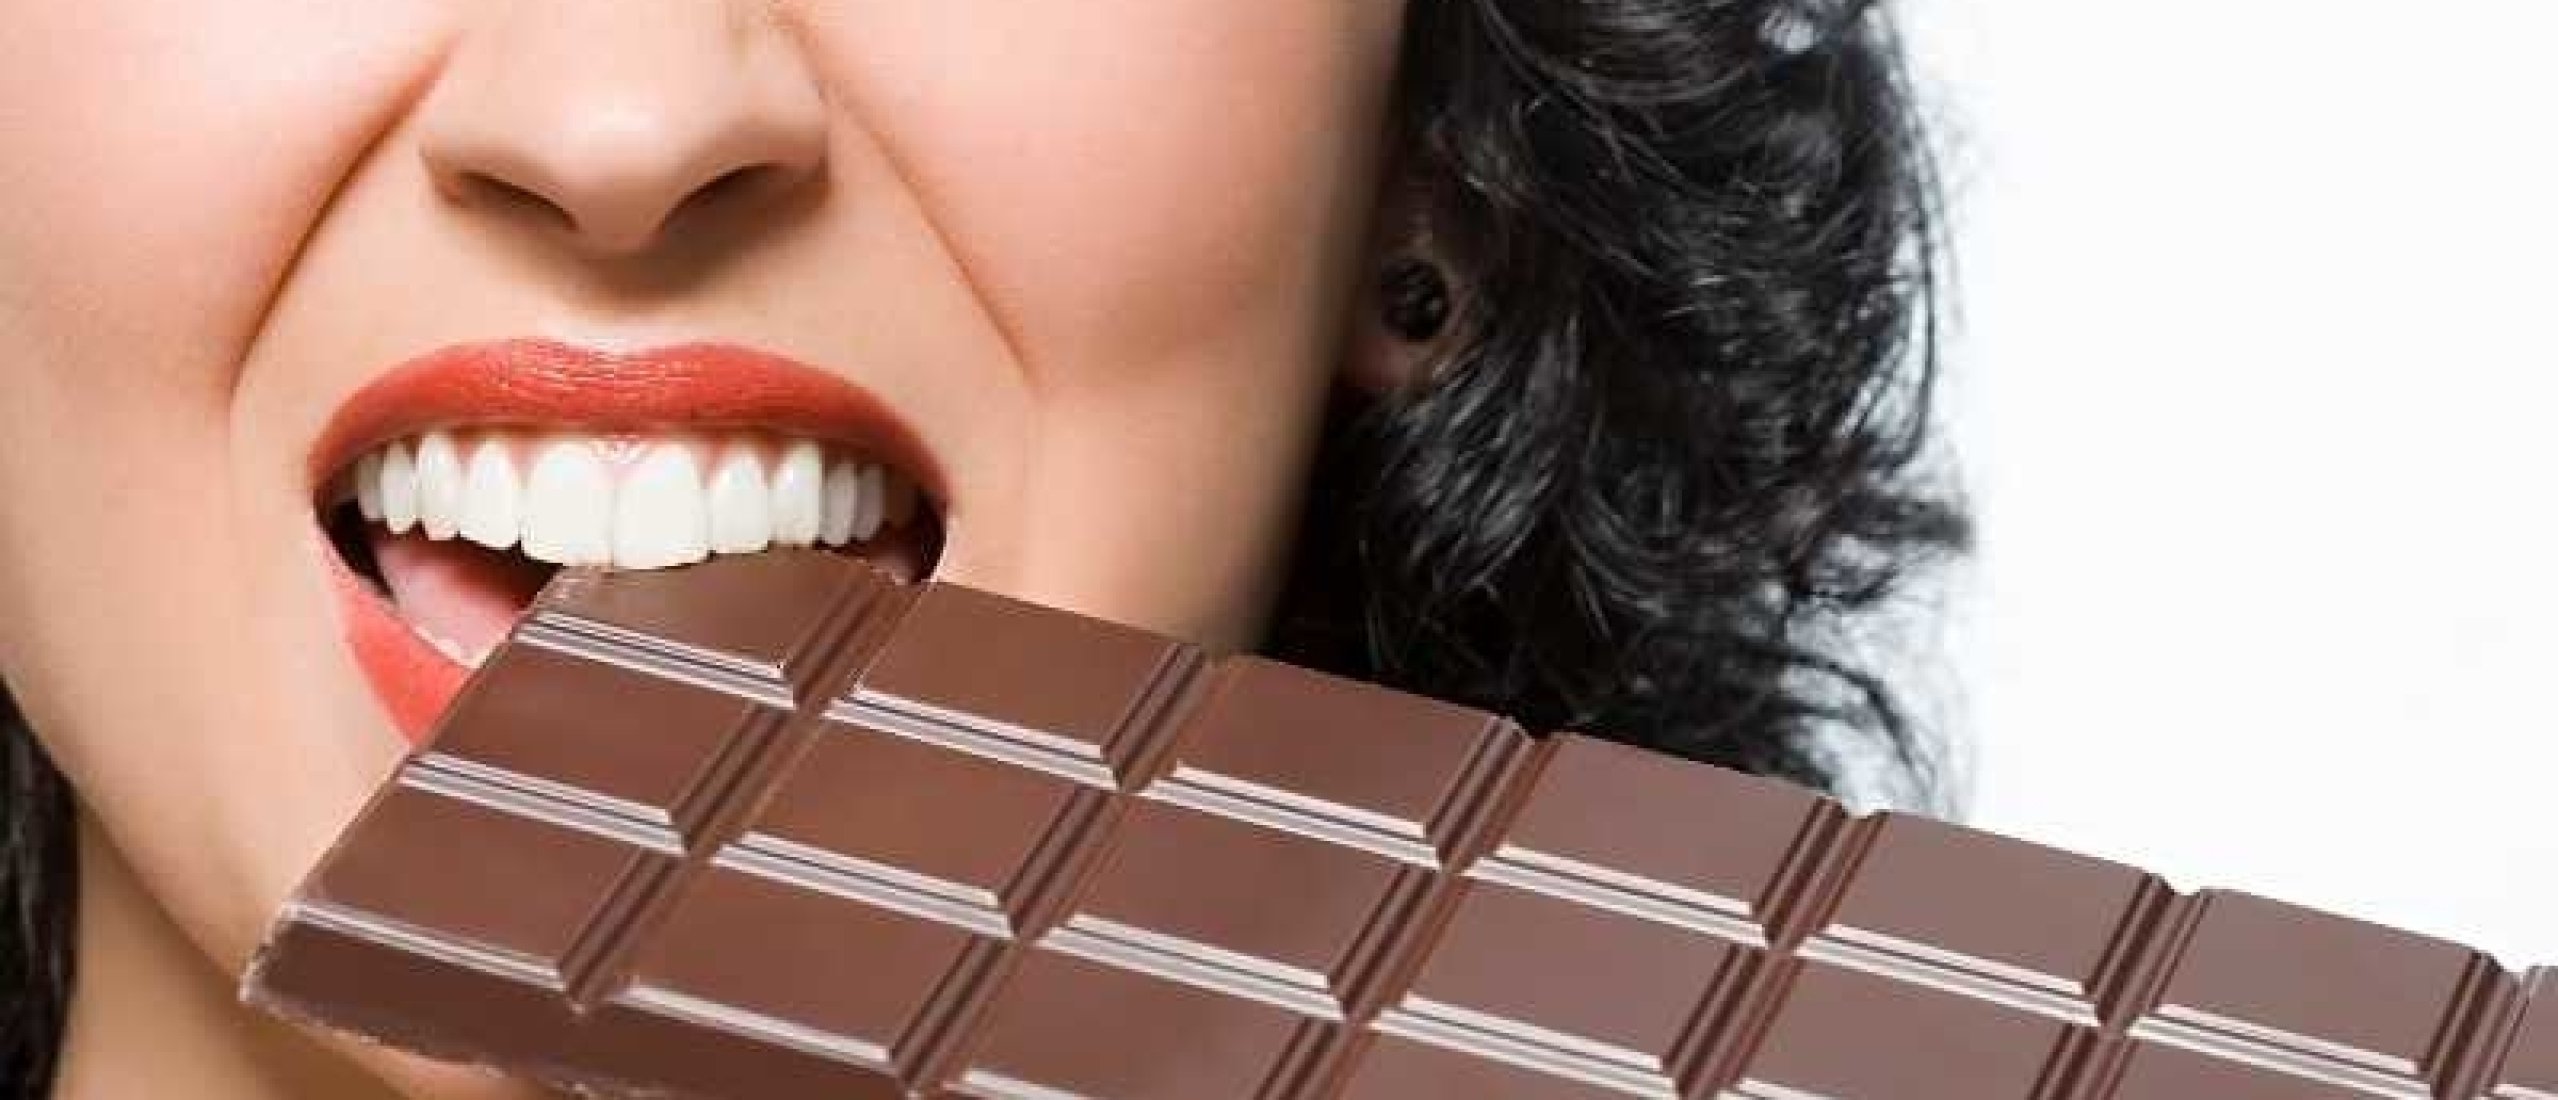 duurzame chocolade